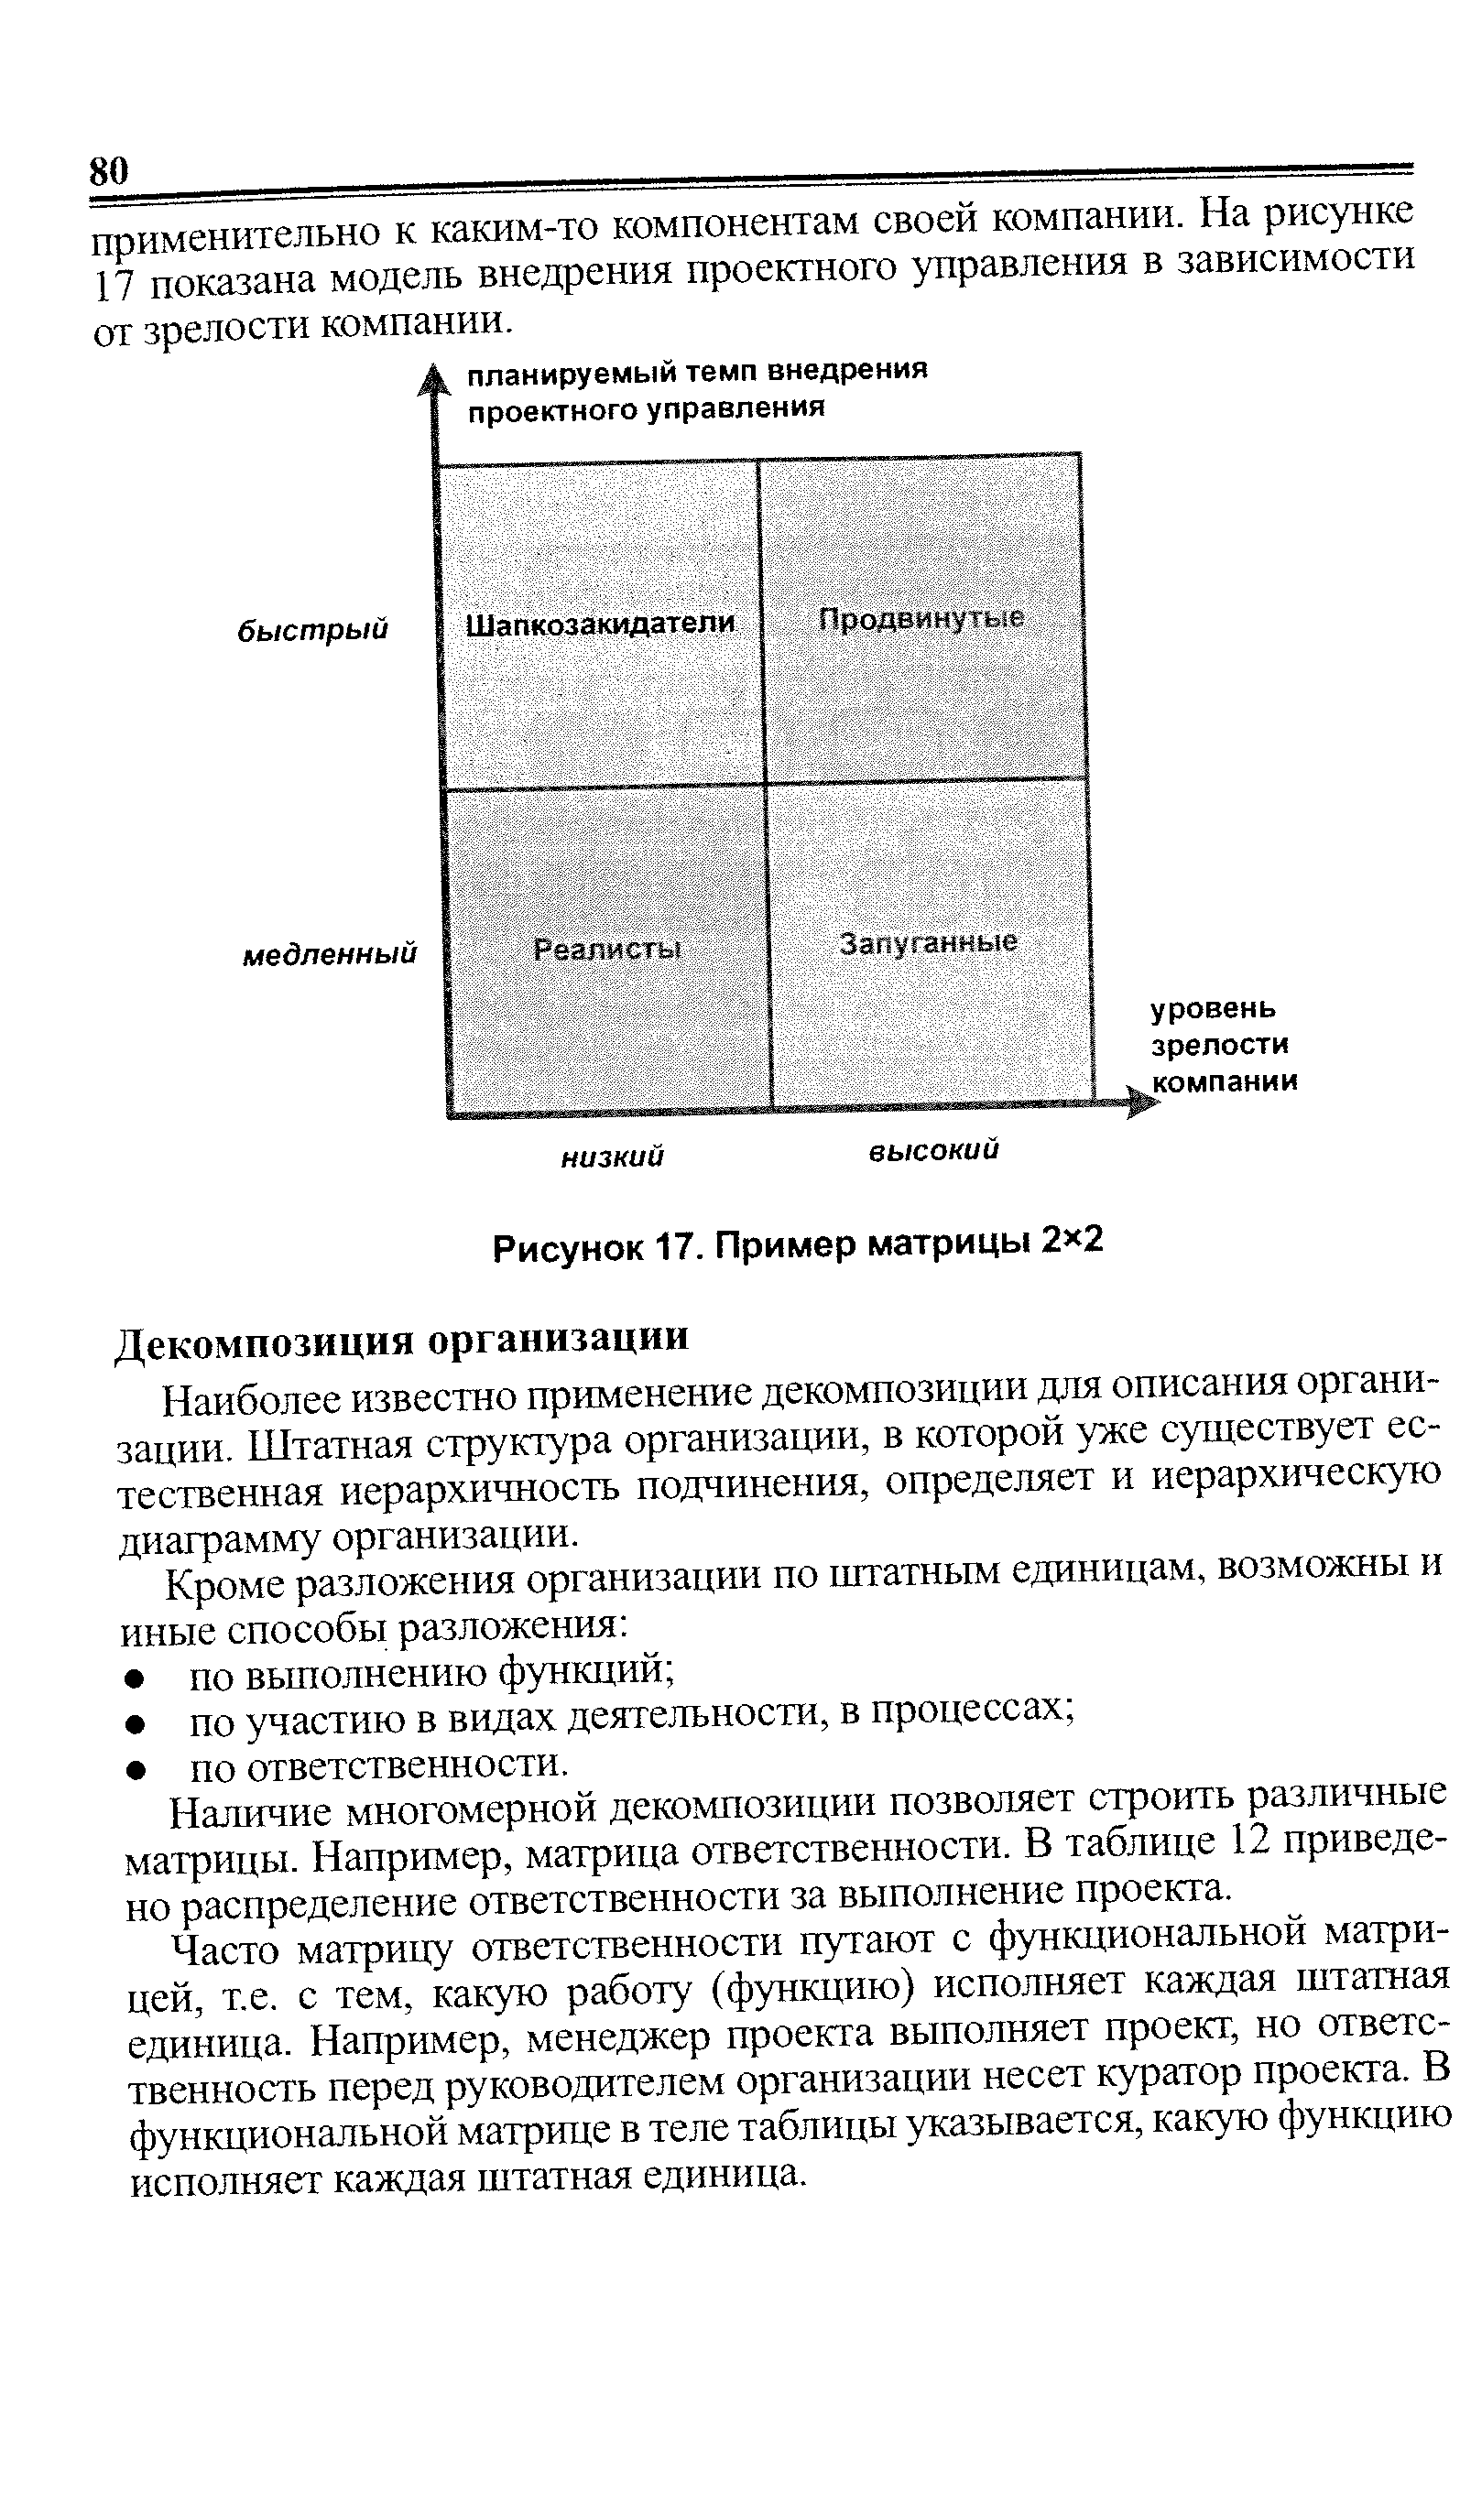 Рисунок 17. Пример матрицы 2x2
